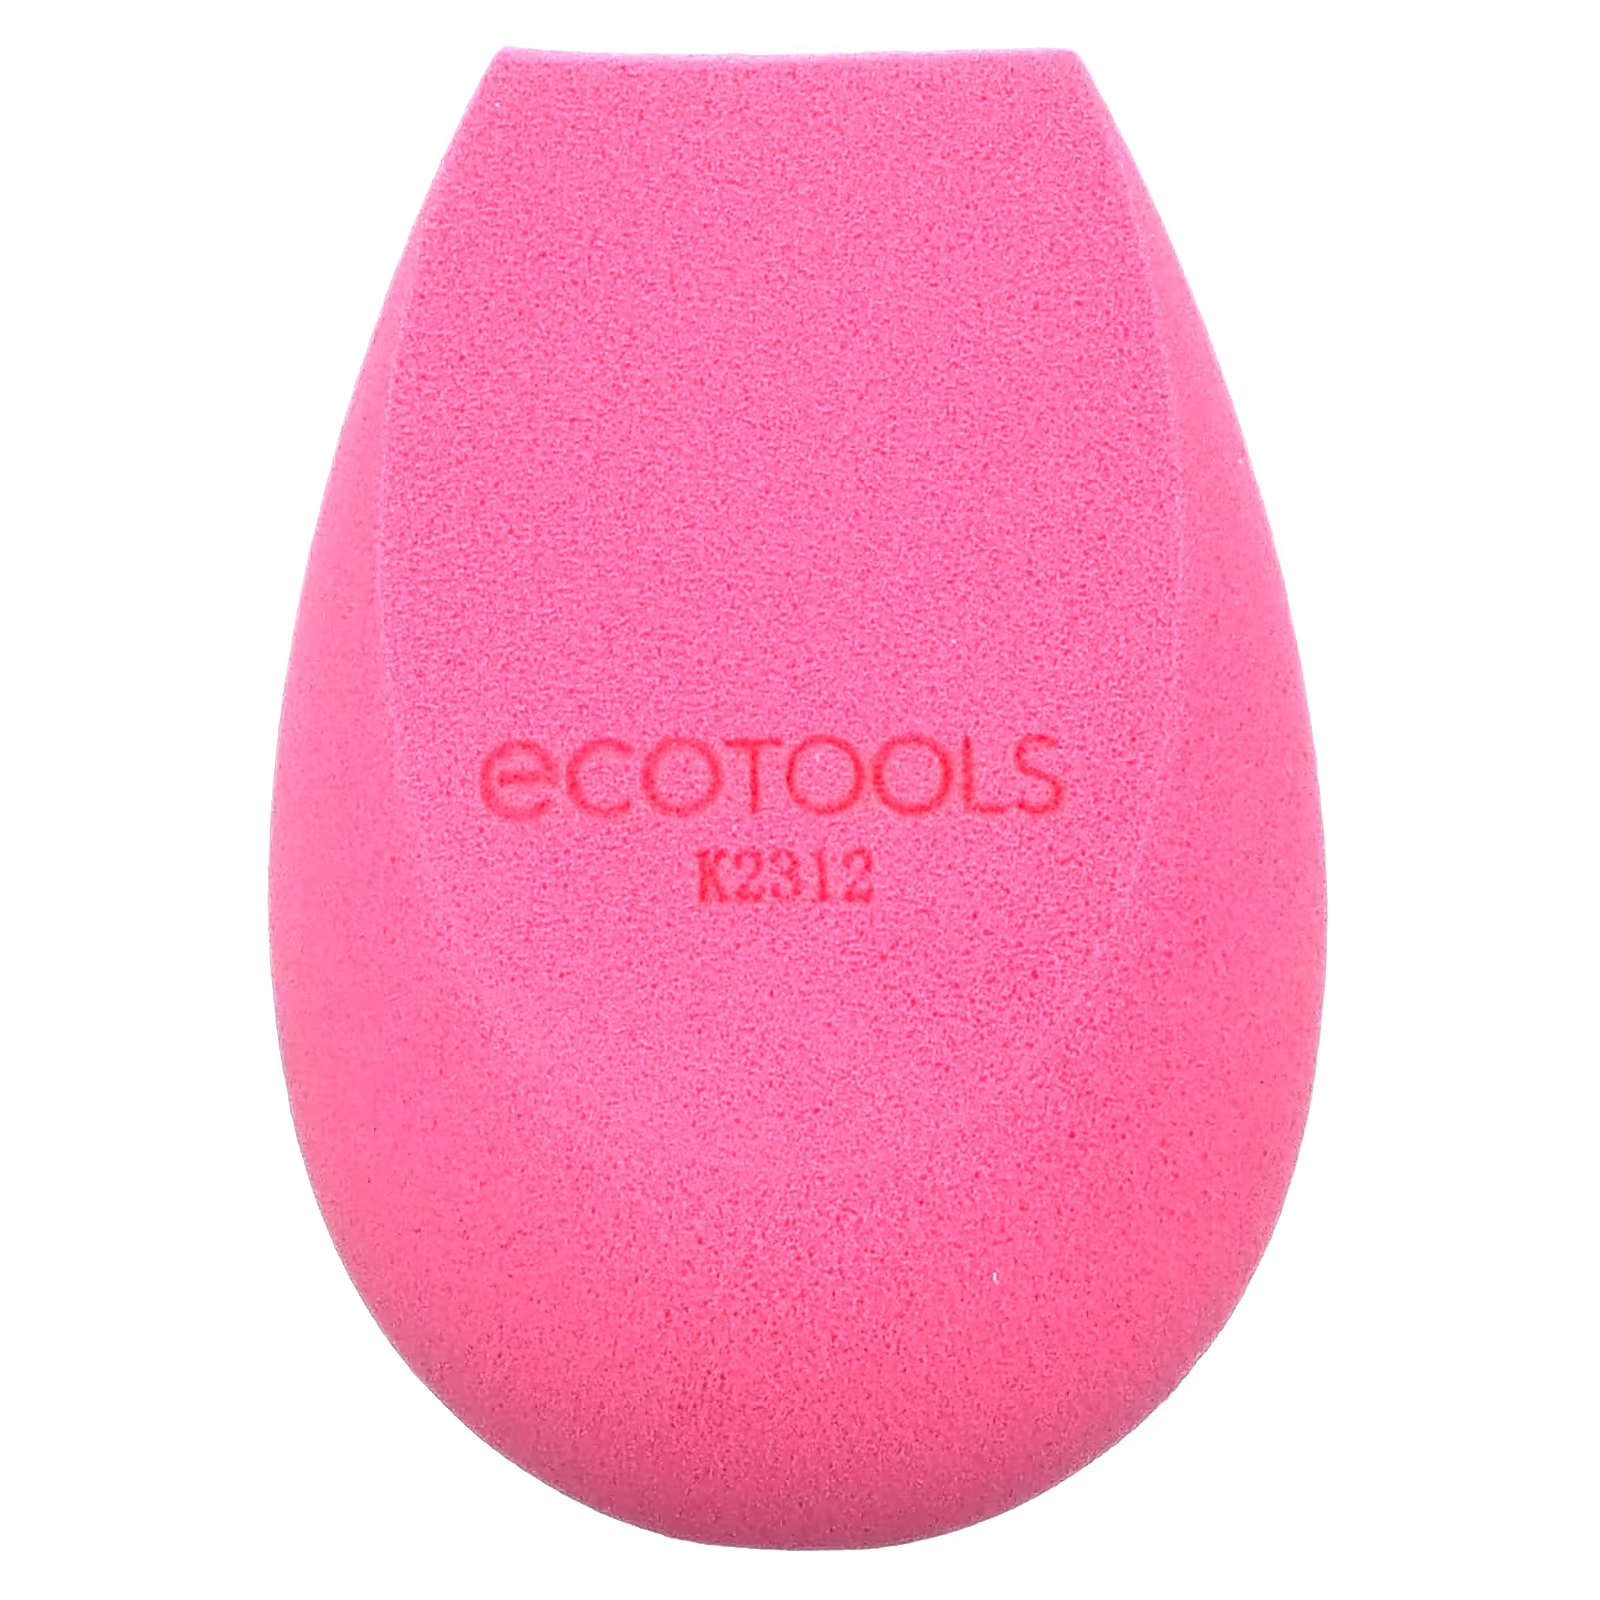 Спонж для макияжа EcoTools Bioblender, розвоый ecotools bioblender sponge